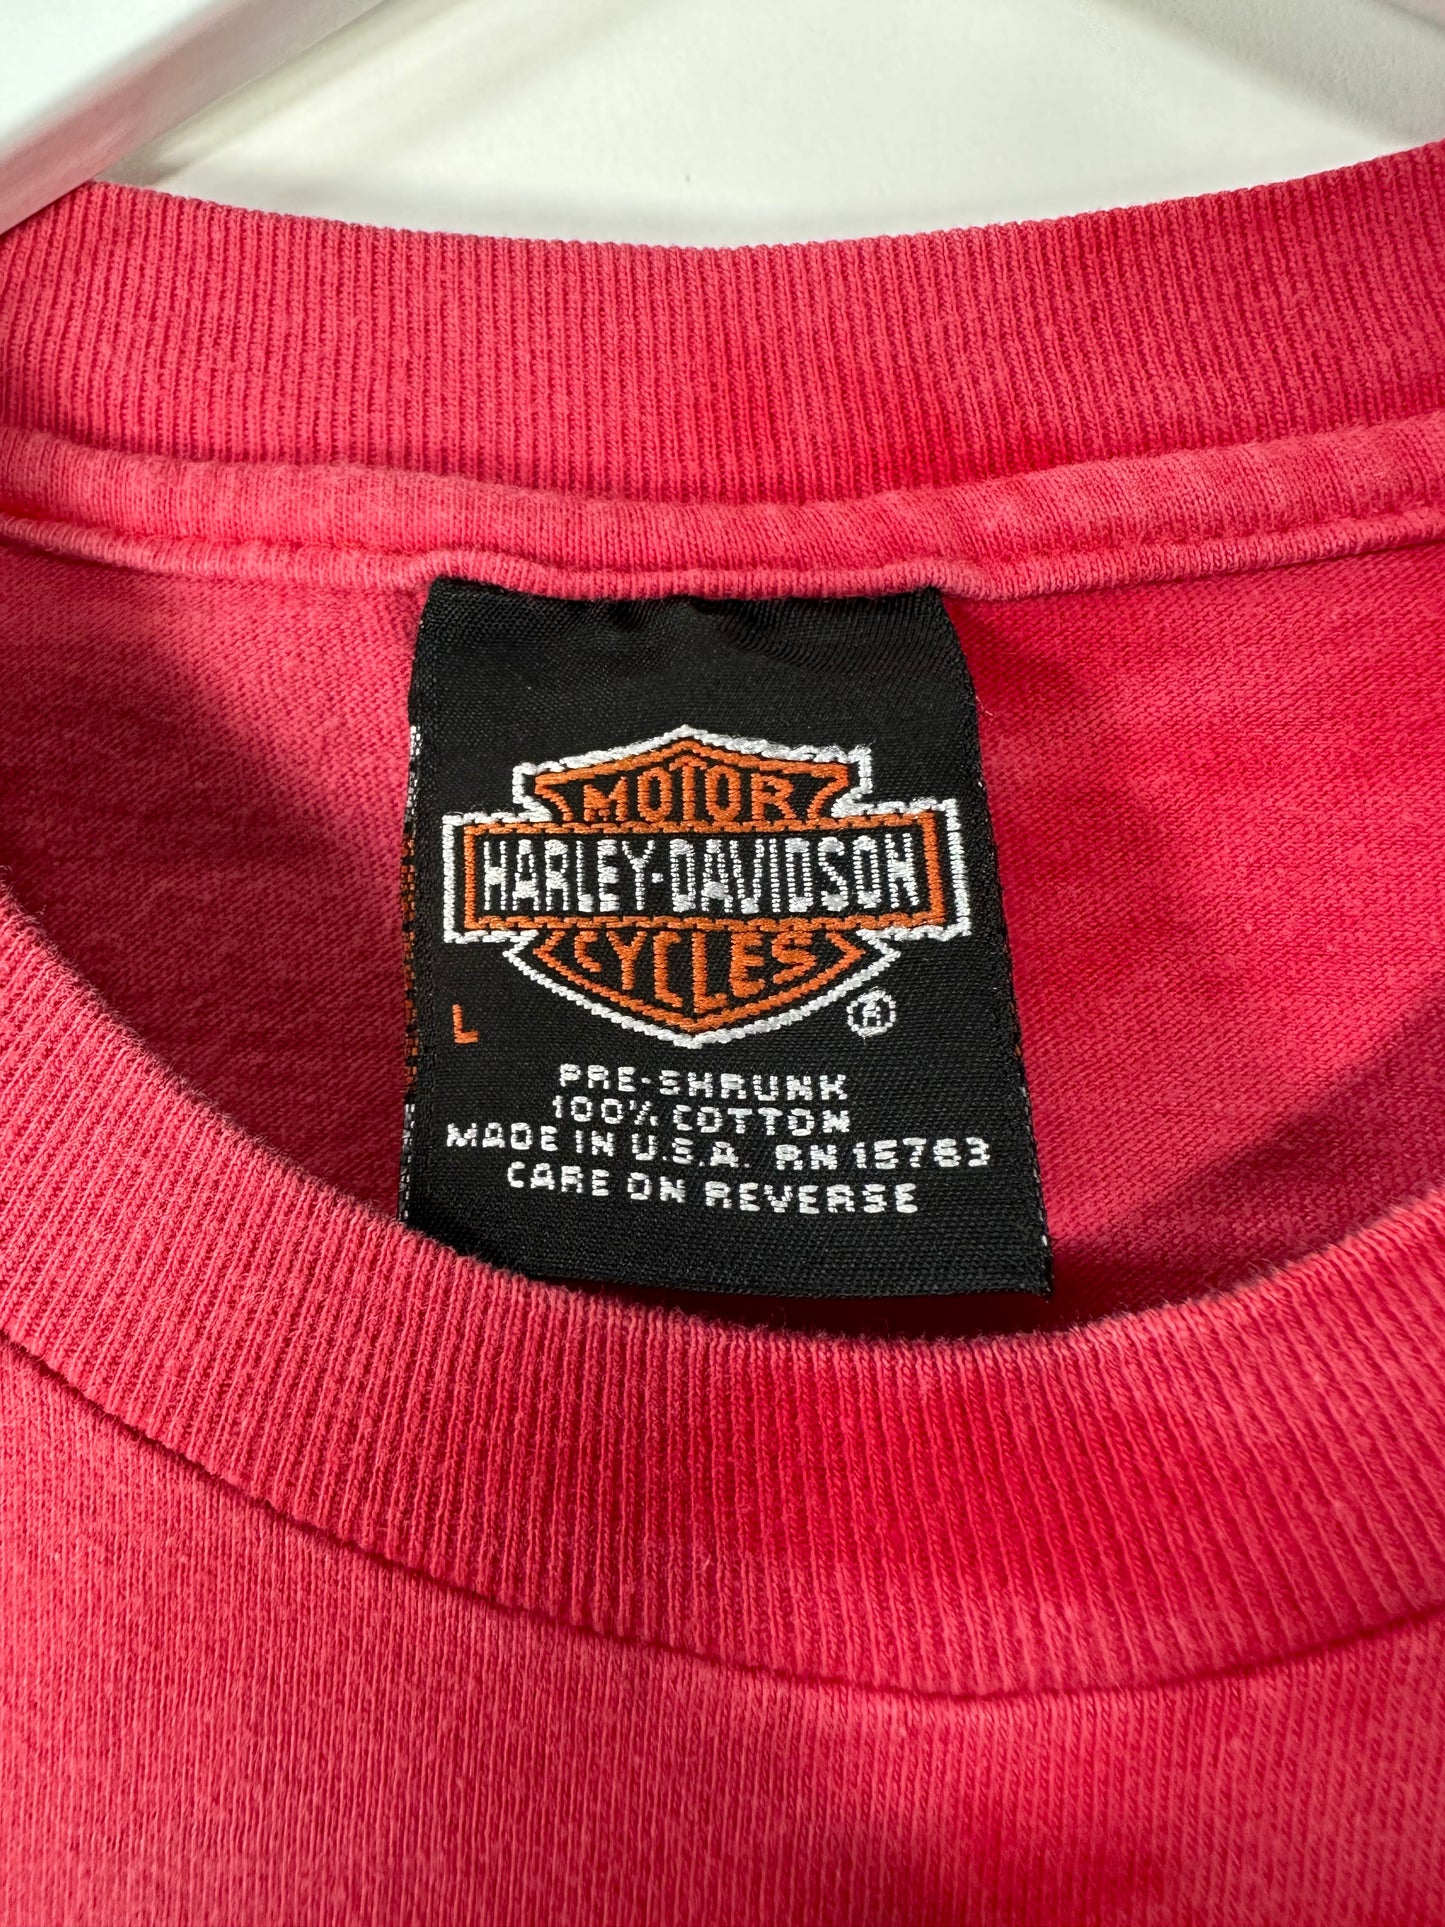 Harley Davidson T Shirt - M